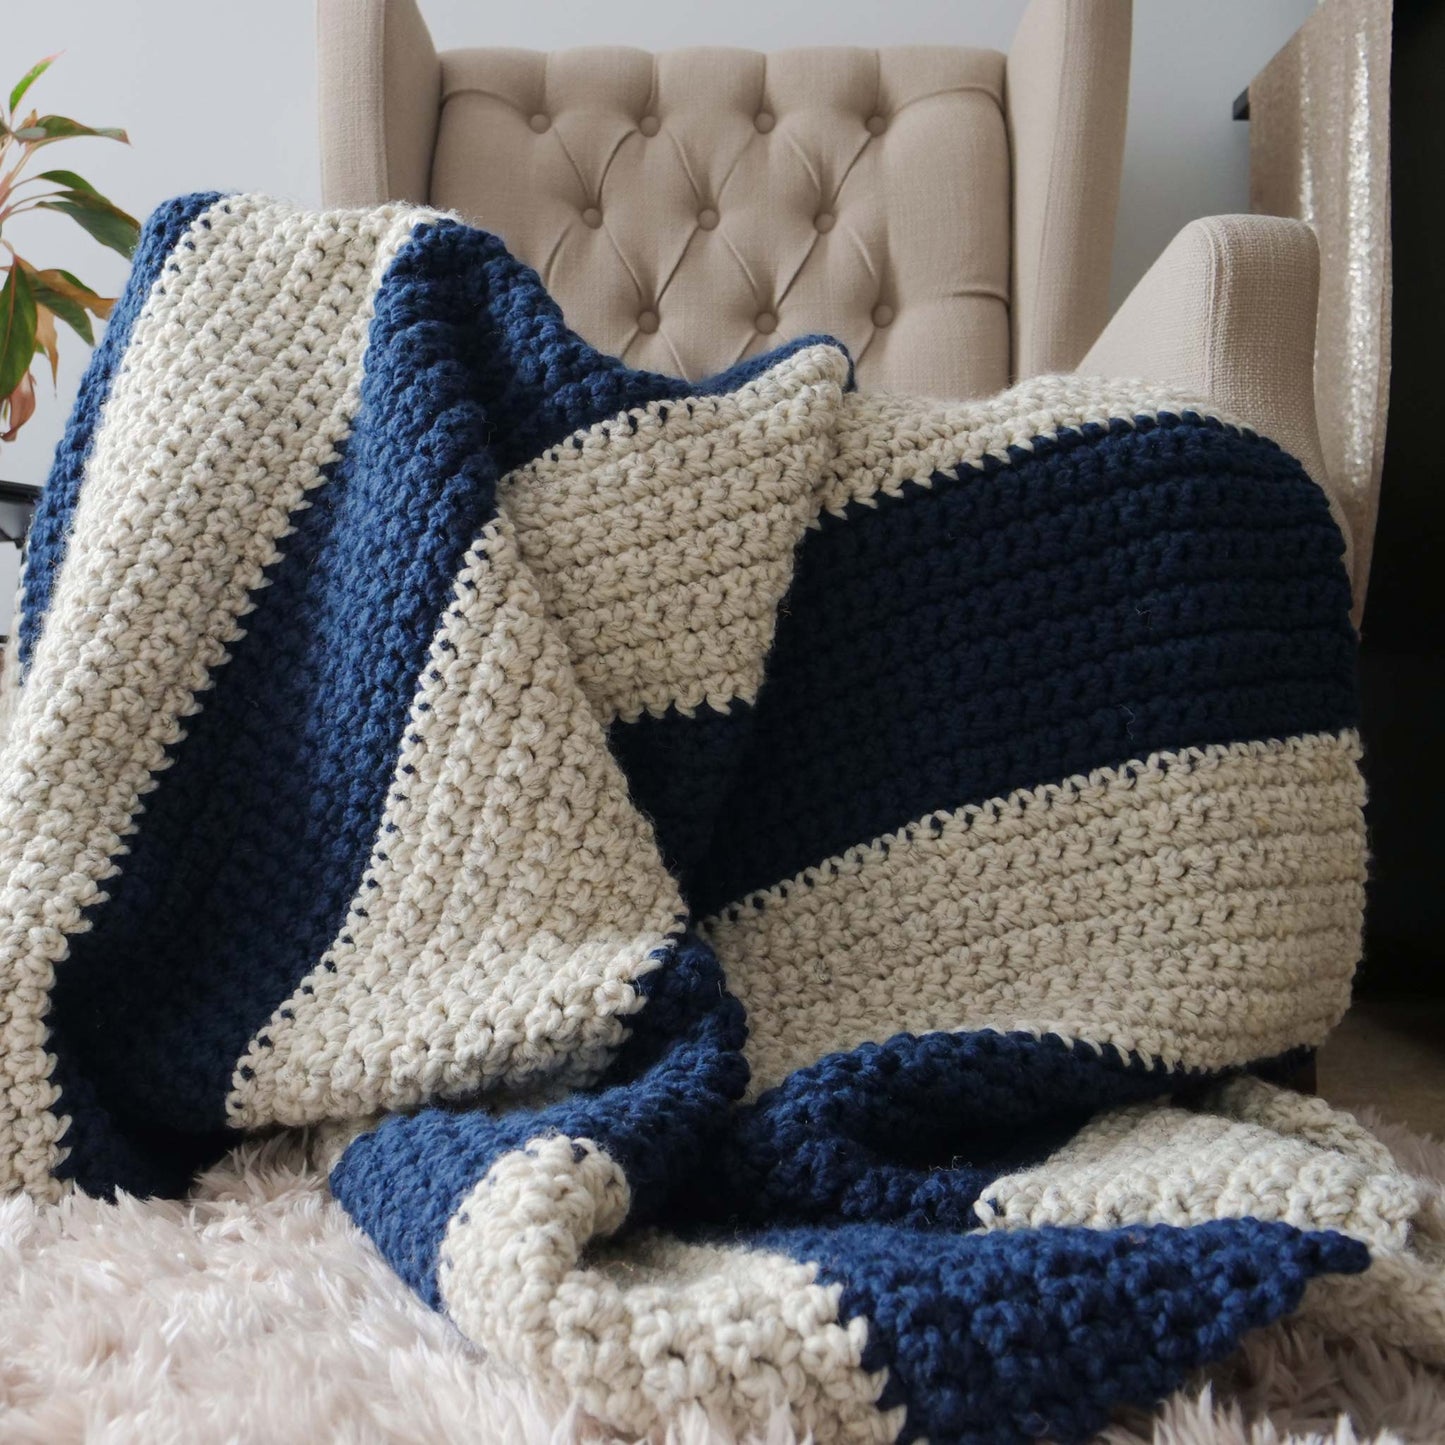 Beginner Crochet Blanket PDF